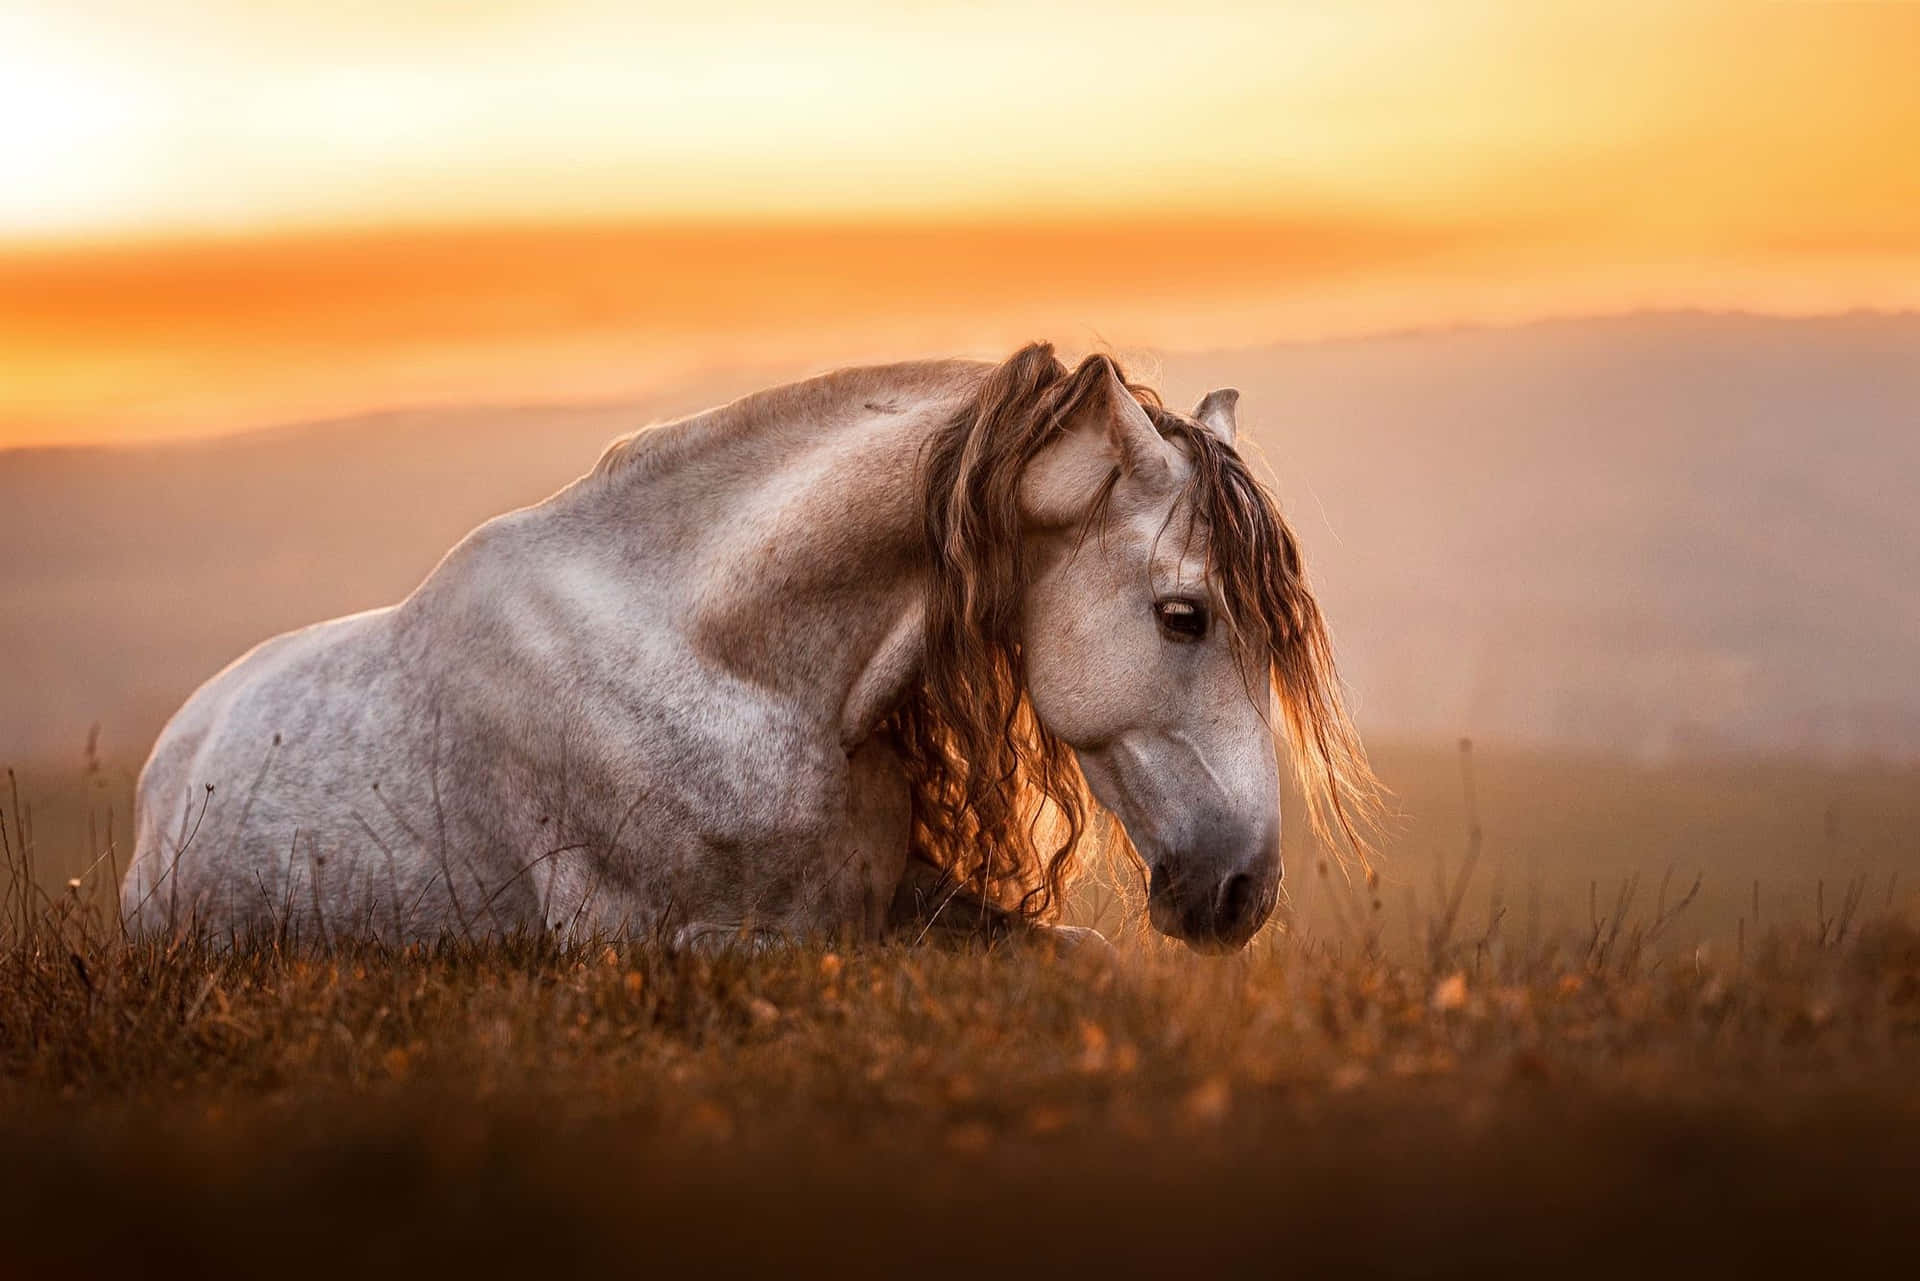 Serene Sunset Horse Portrait Wallpaper